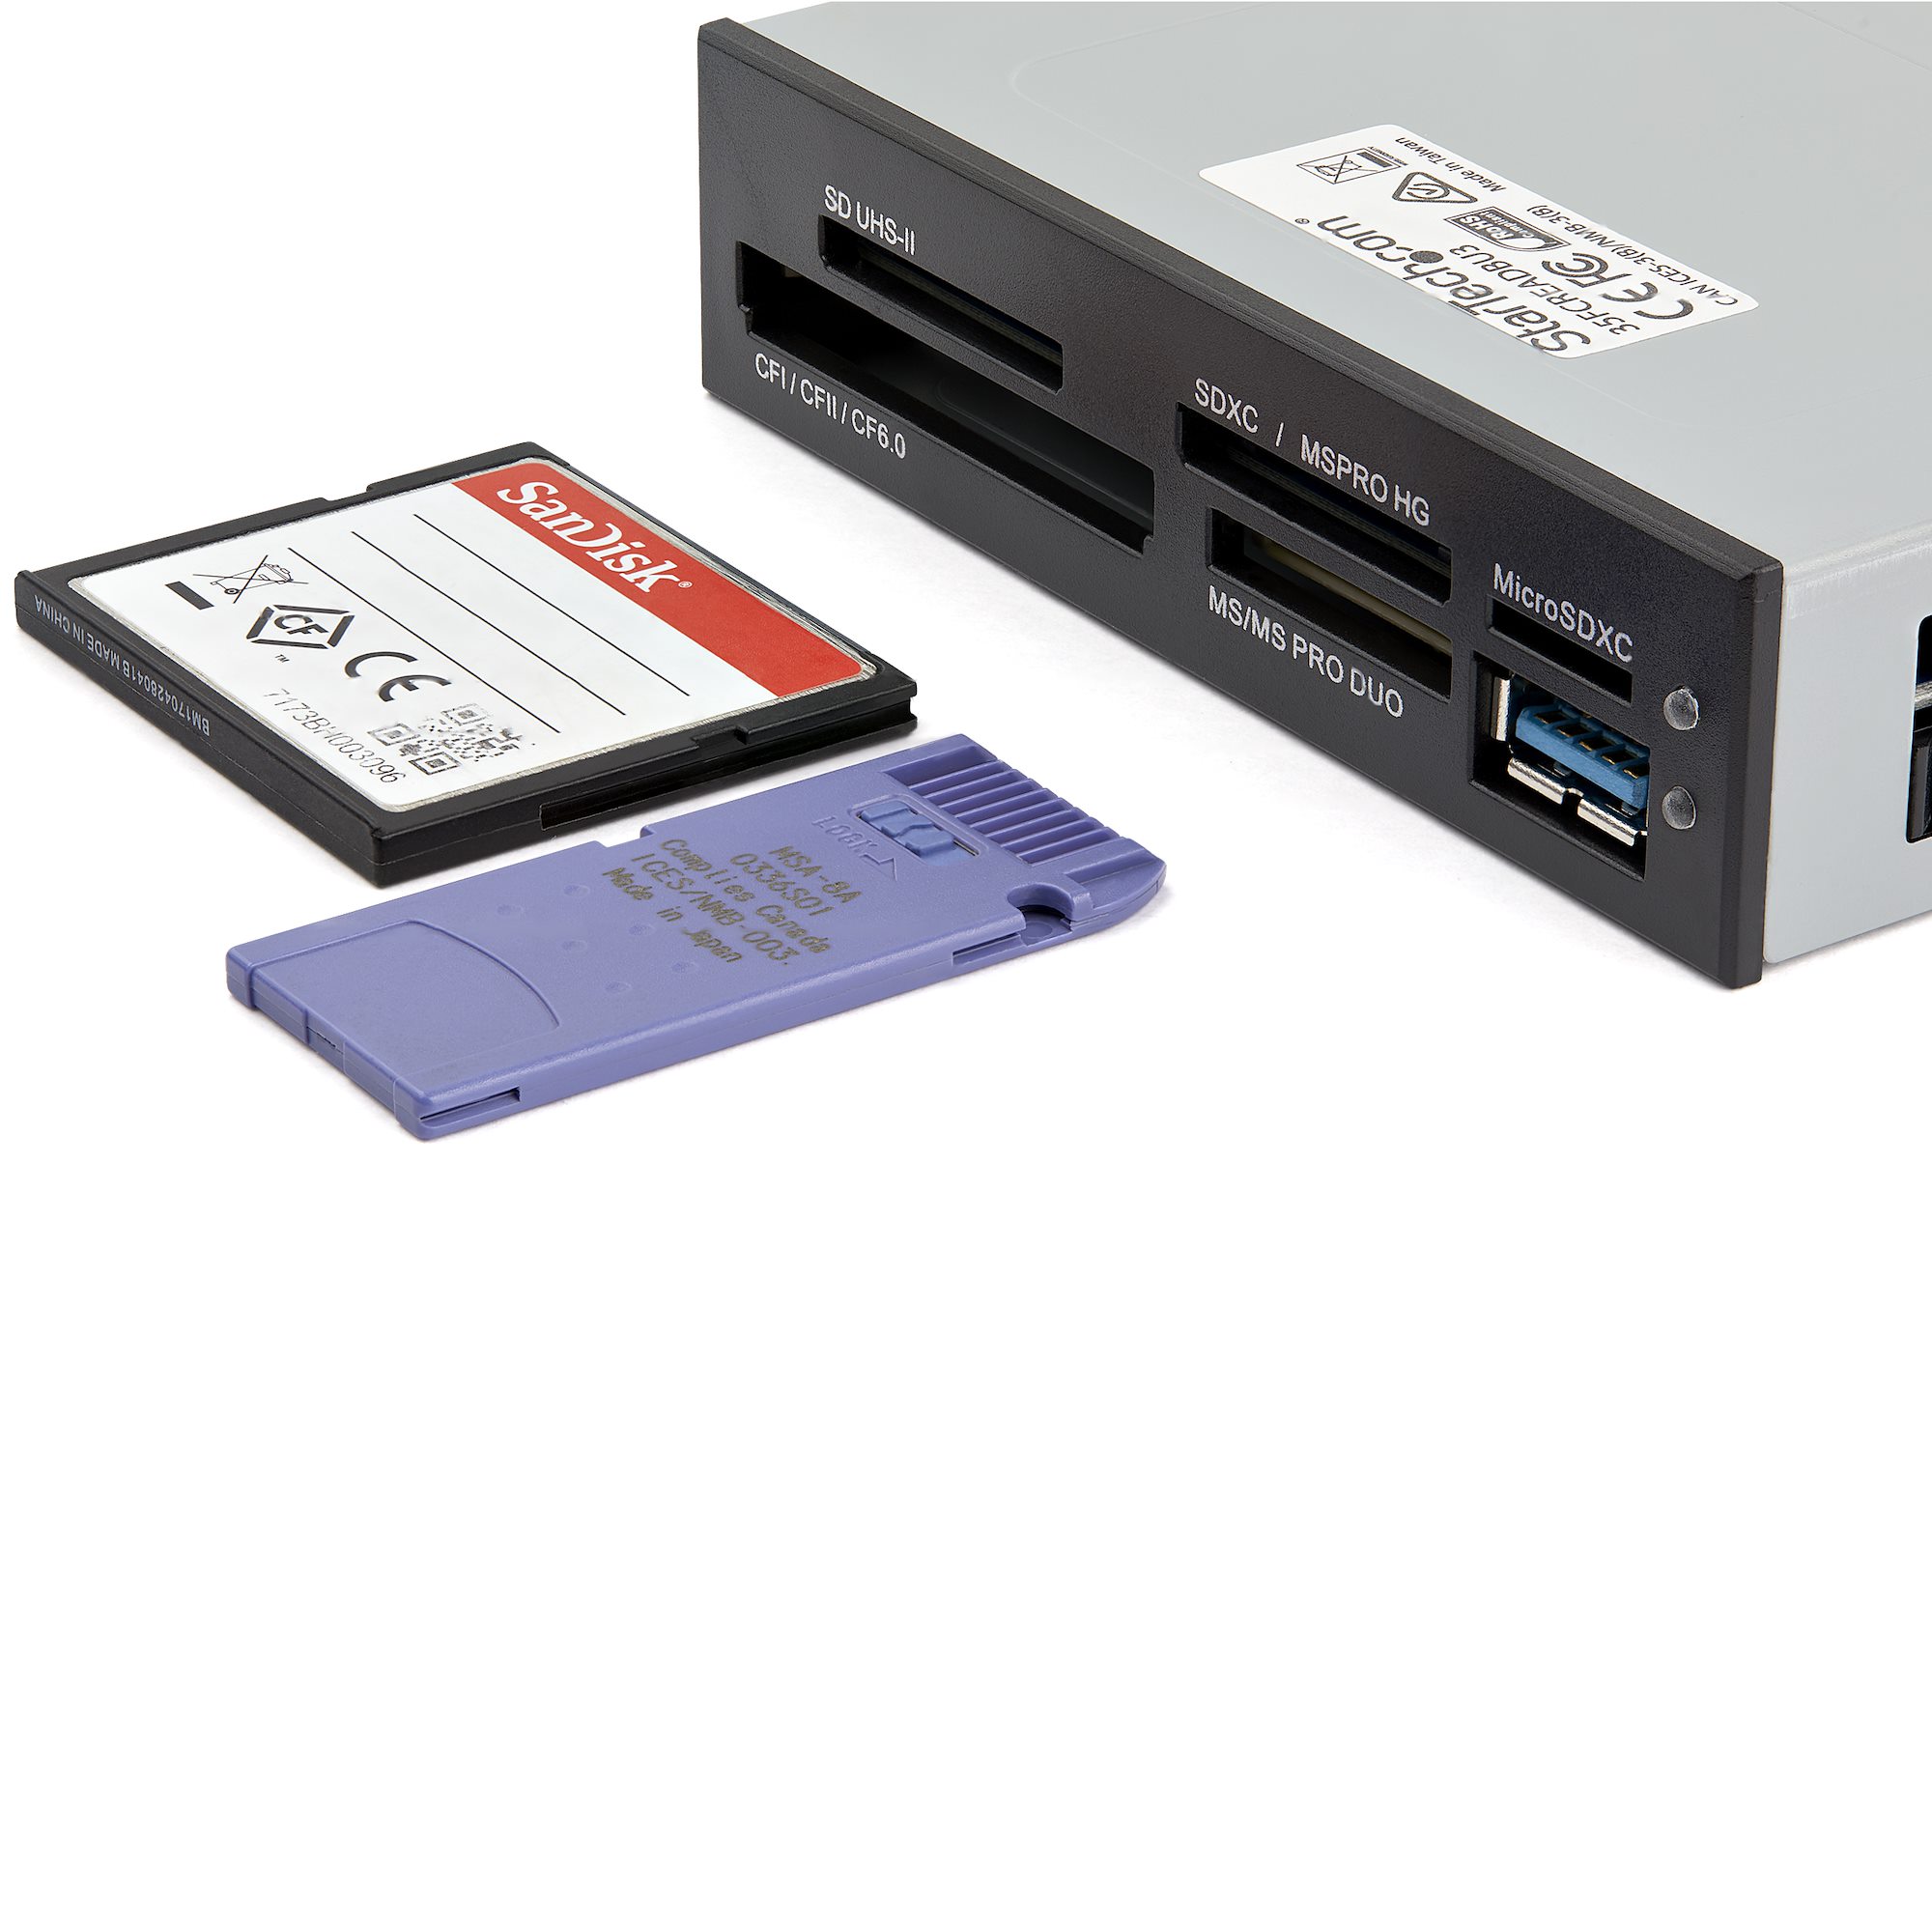 SanDisk lecteur de cartes SD UHS-II - Lecteurs et cartes mémoires